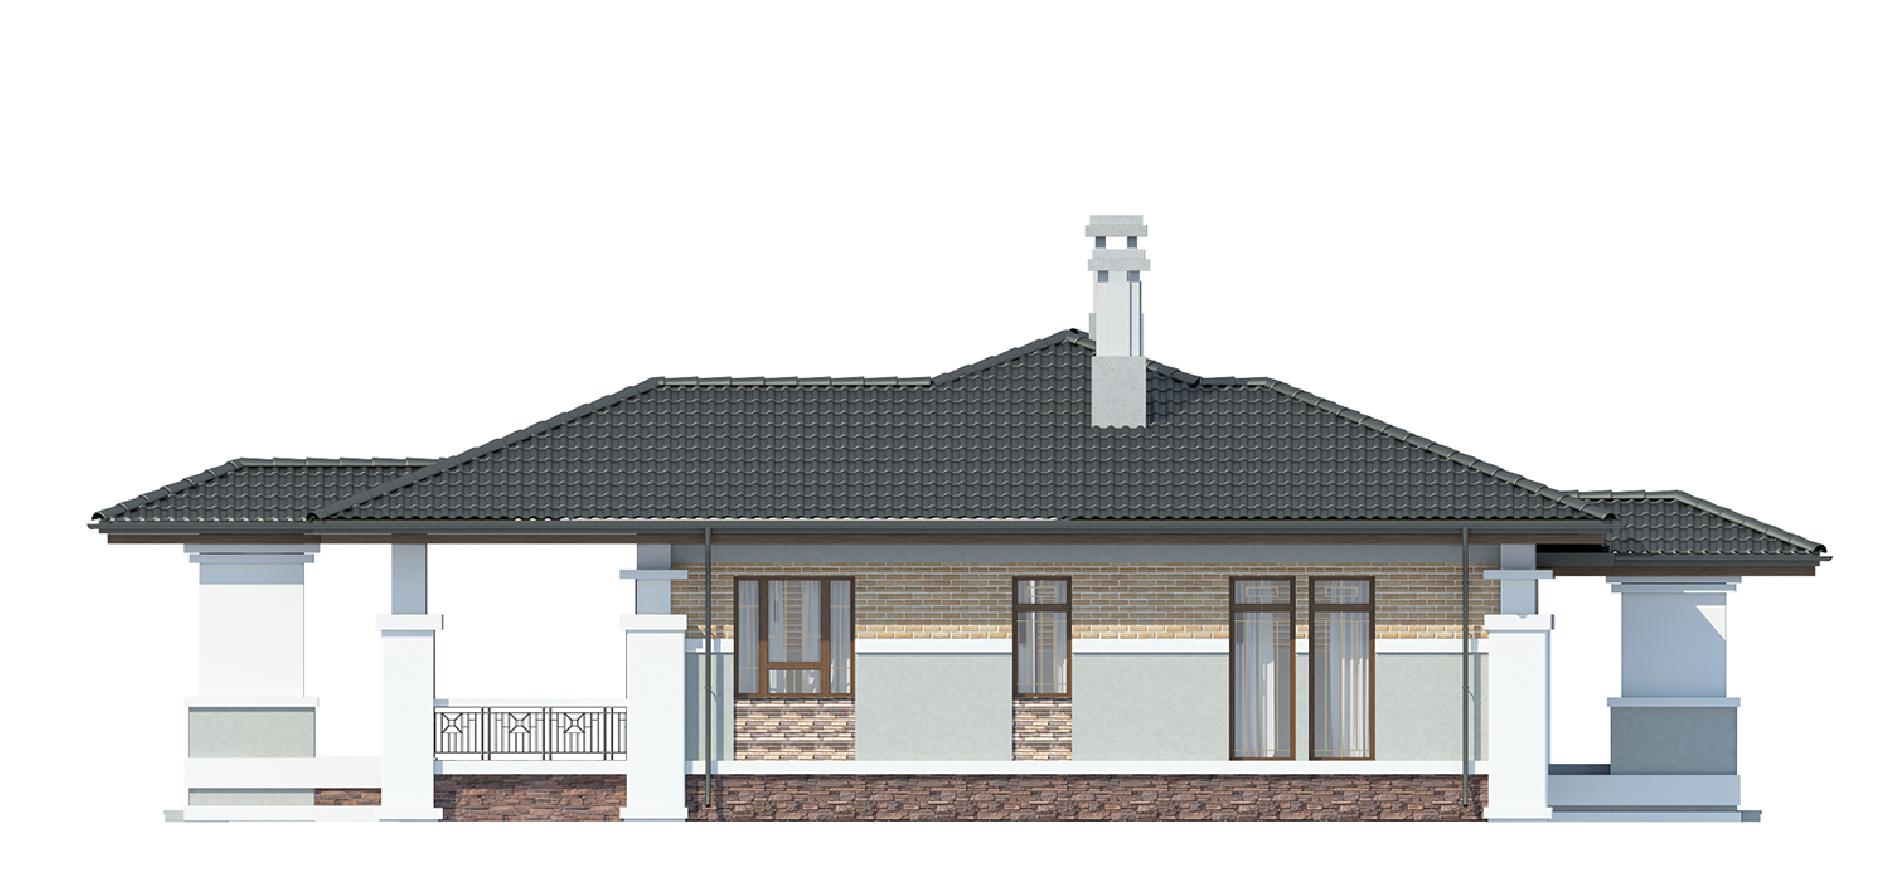 Фасады проекта дома №cp-91-12 cp-91-12_4.jpg